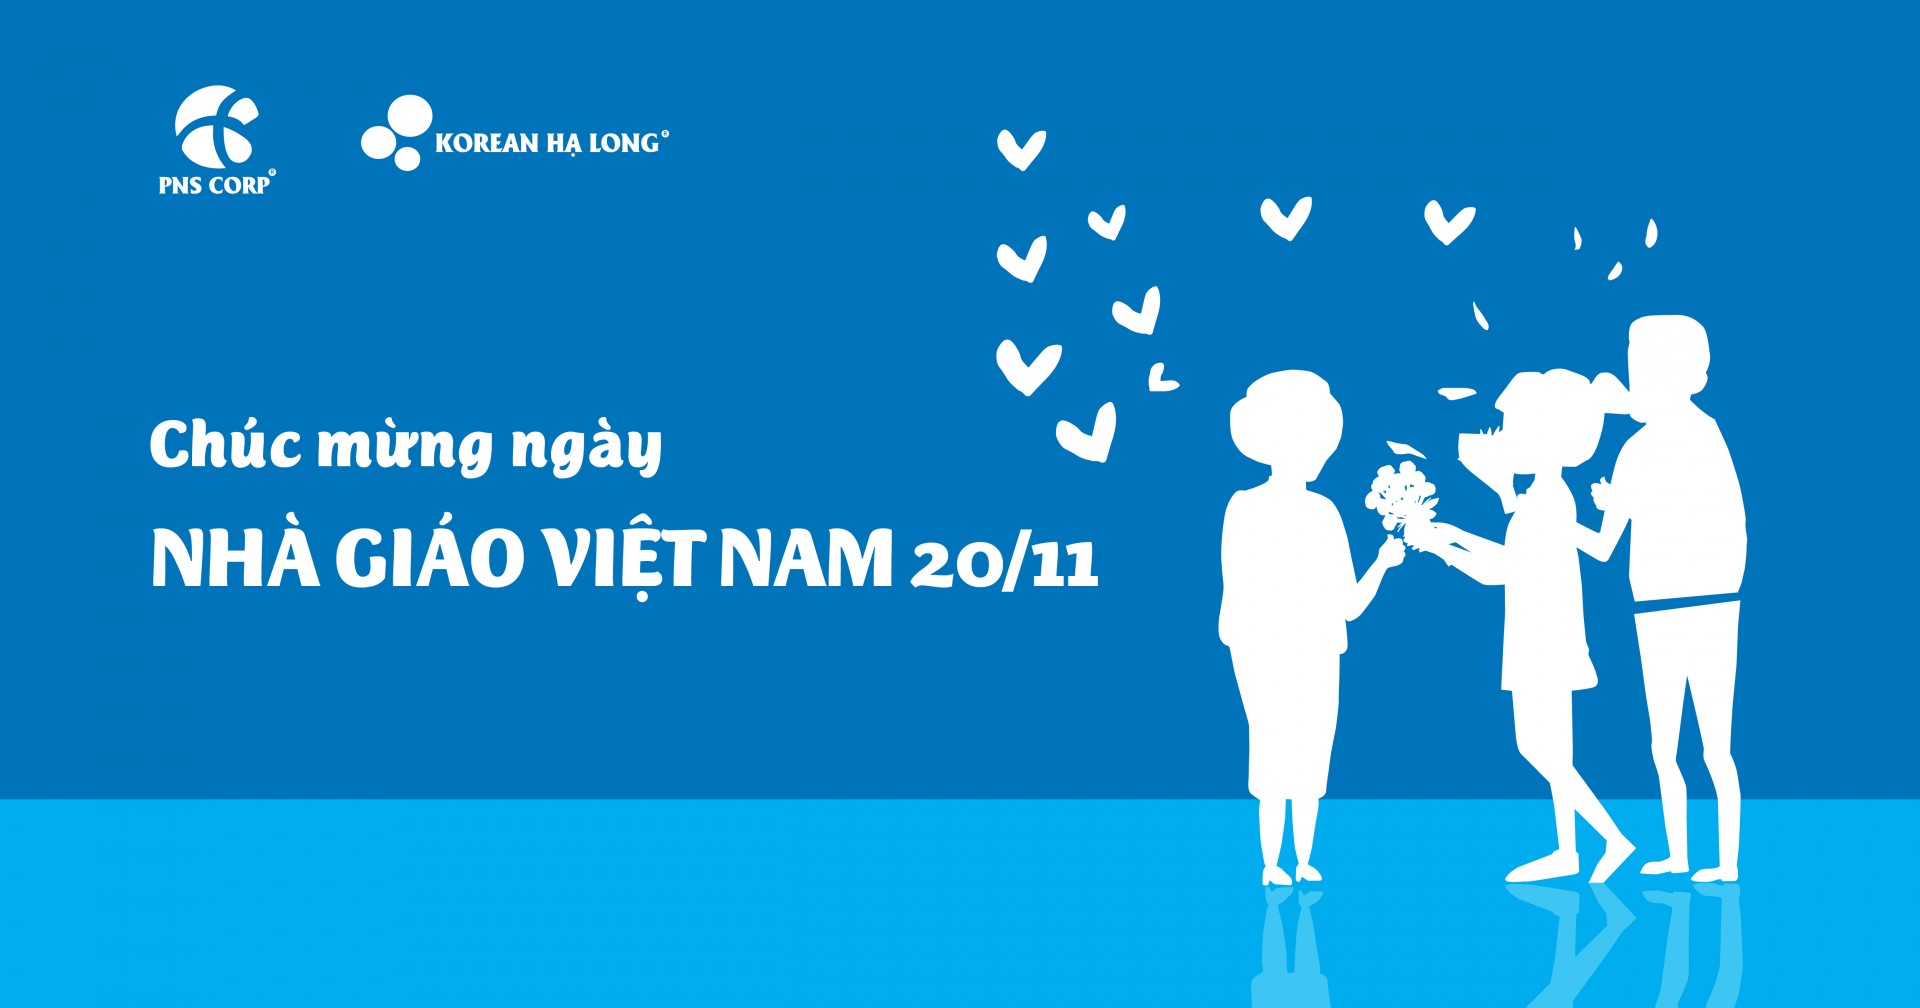 Chúc mừng ngày Nhà giáo Việt Nam 20/11 - PNS CORP